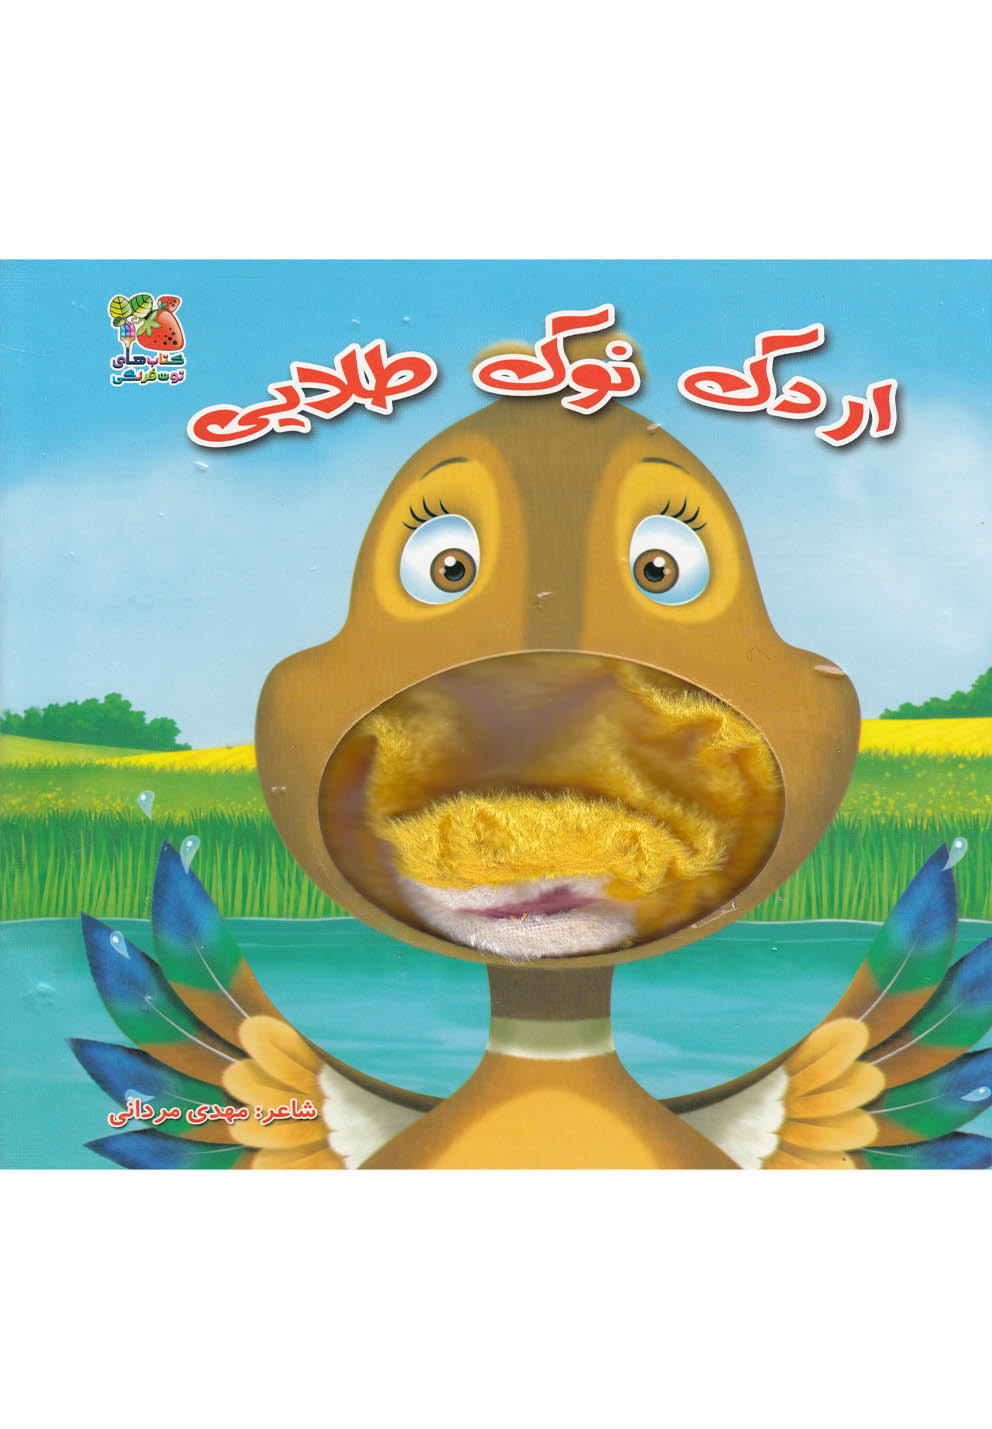 كتاب هاي توت فرنگي (اردك نوك طلايي)